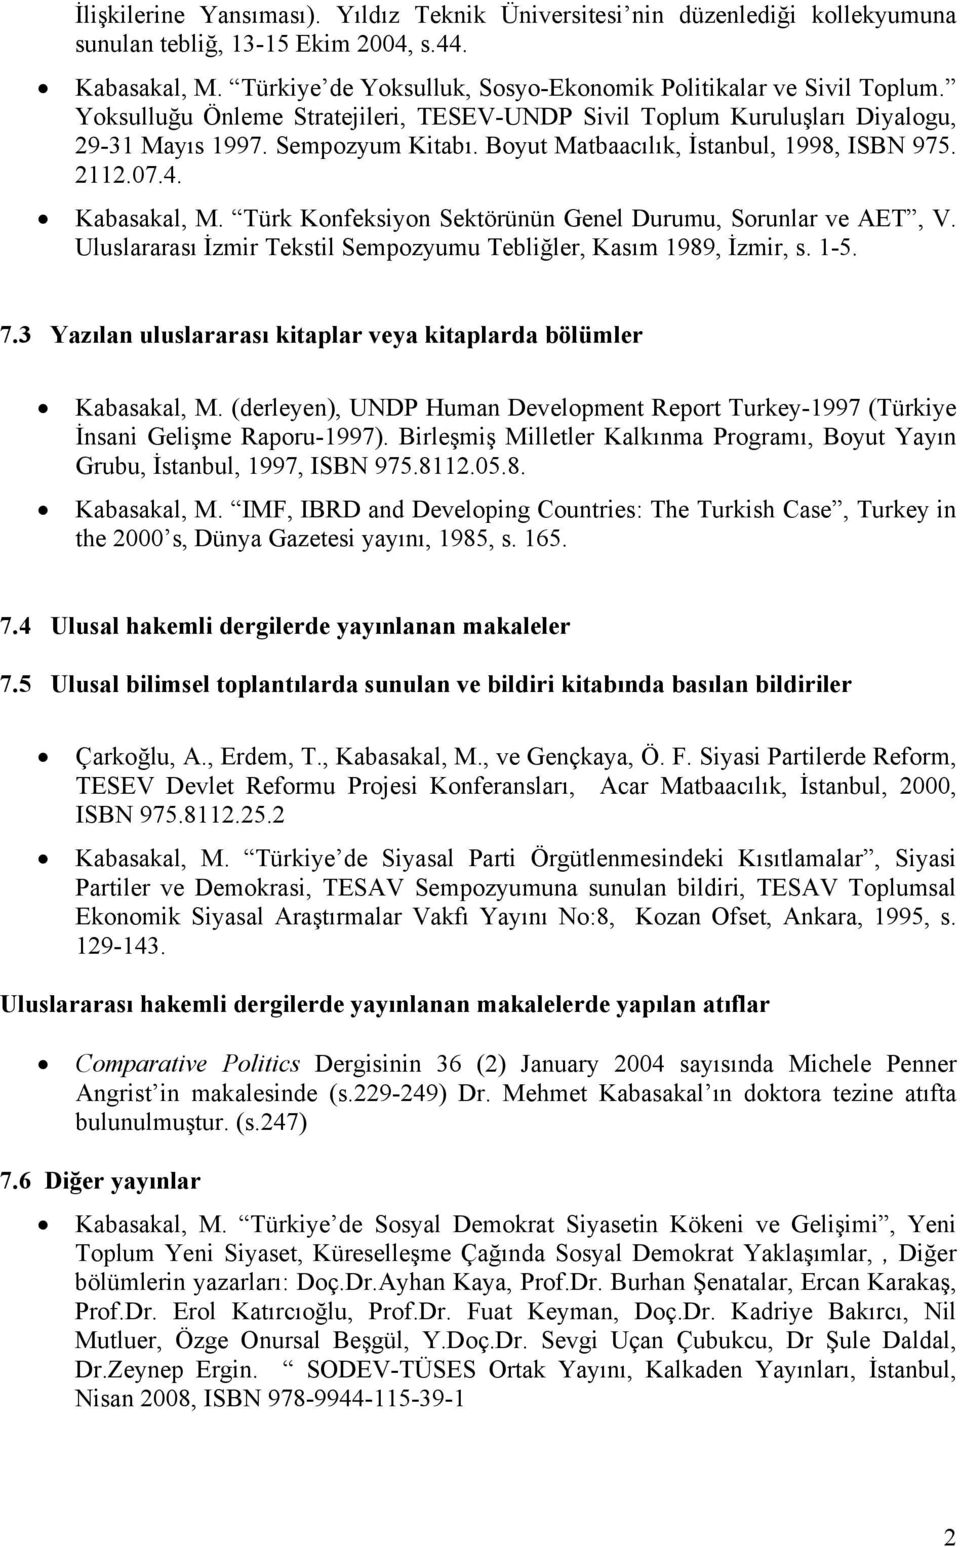 Türk Konfeksiyon Sektörünün Genel Durumu, Sorunlar ve AET, V. Uluslararası İzmir Tekstil Sempozyumu Tebliğler, Kasım 1989, İzmir, s. 1-5. 7.